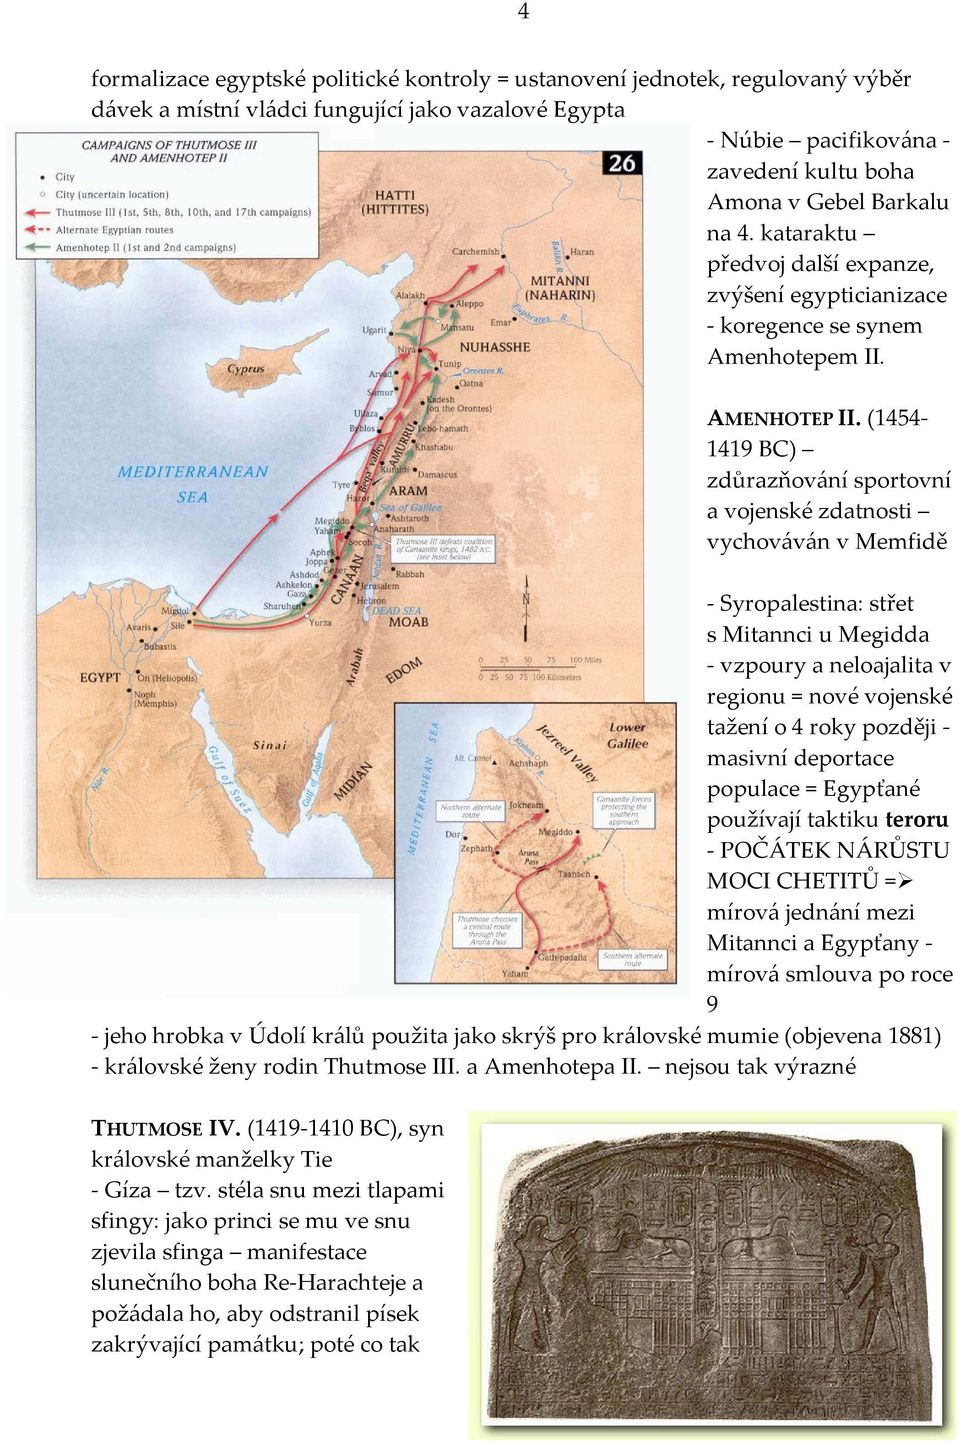 (1454-1419 BC) zdůrazňování sportovní a vojenské zdatnosti vychováván v Memfidě - Syropalestina: střet s Mitannci u Megidda - vzpoury a neloajalita v regionu = nové vojenské tažení o 4 roky později -